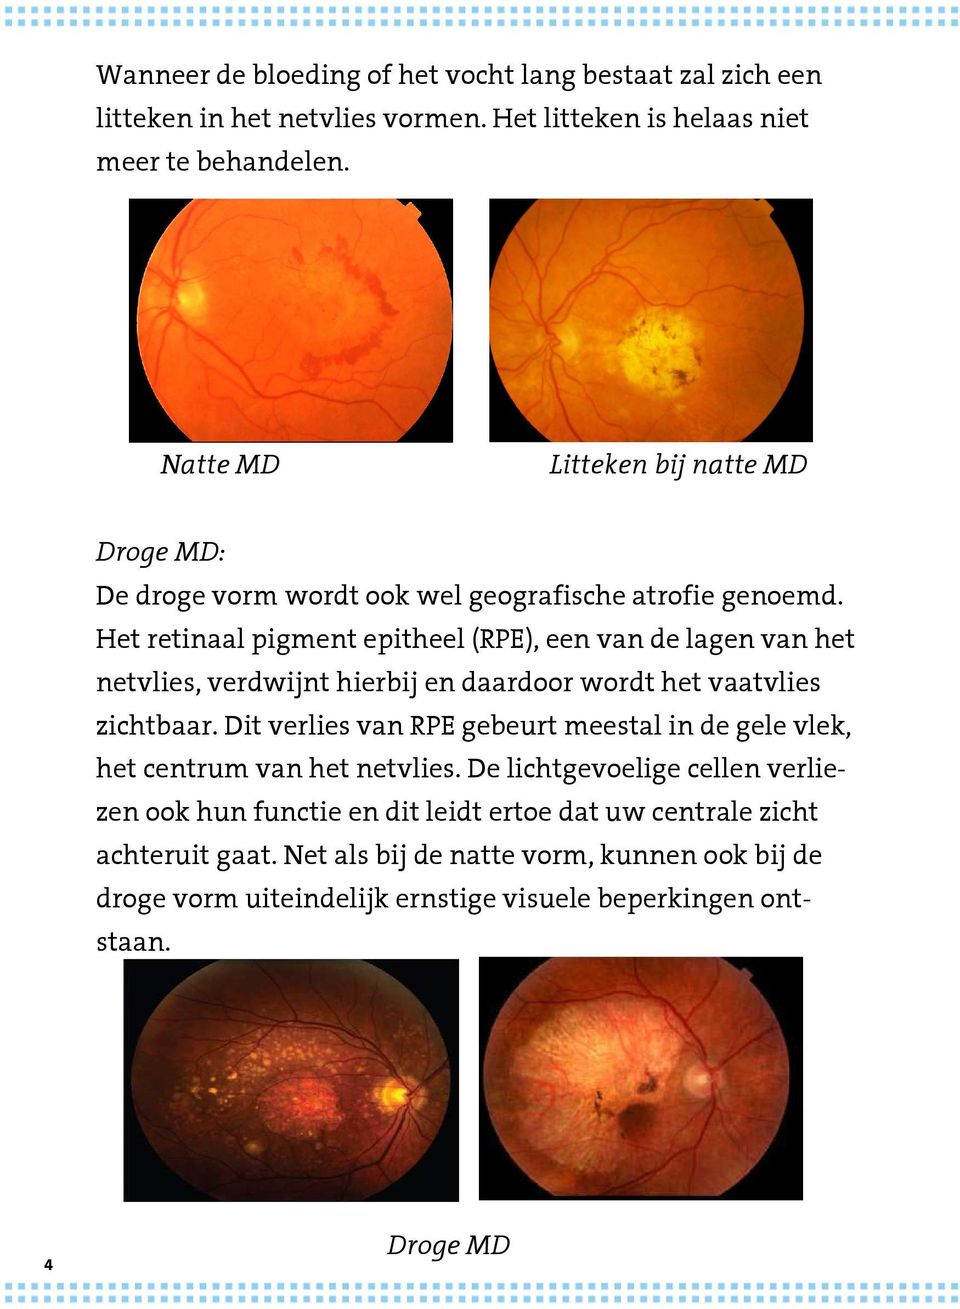 Het retinaal pigment epitheel (RPE), een van de lagen van het netvlies, verdwijnt hierbij en daardoor wordt het vaatvlies zichtbaar.